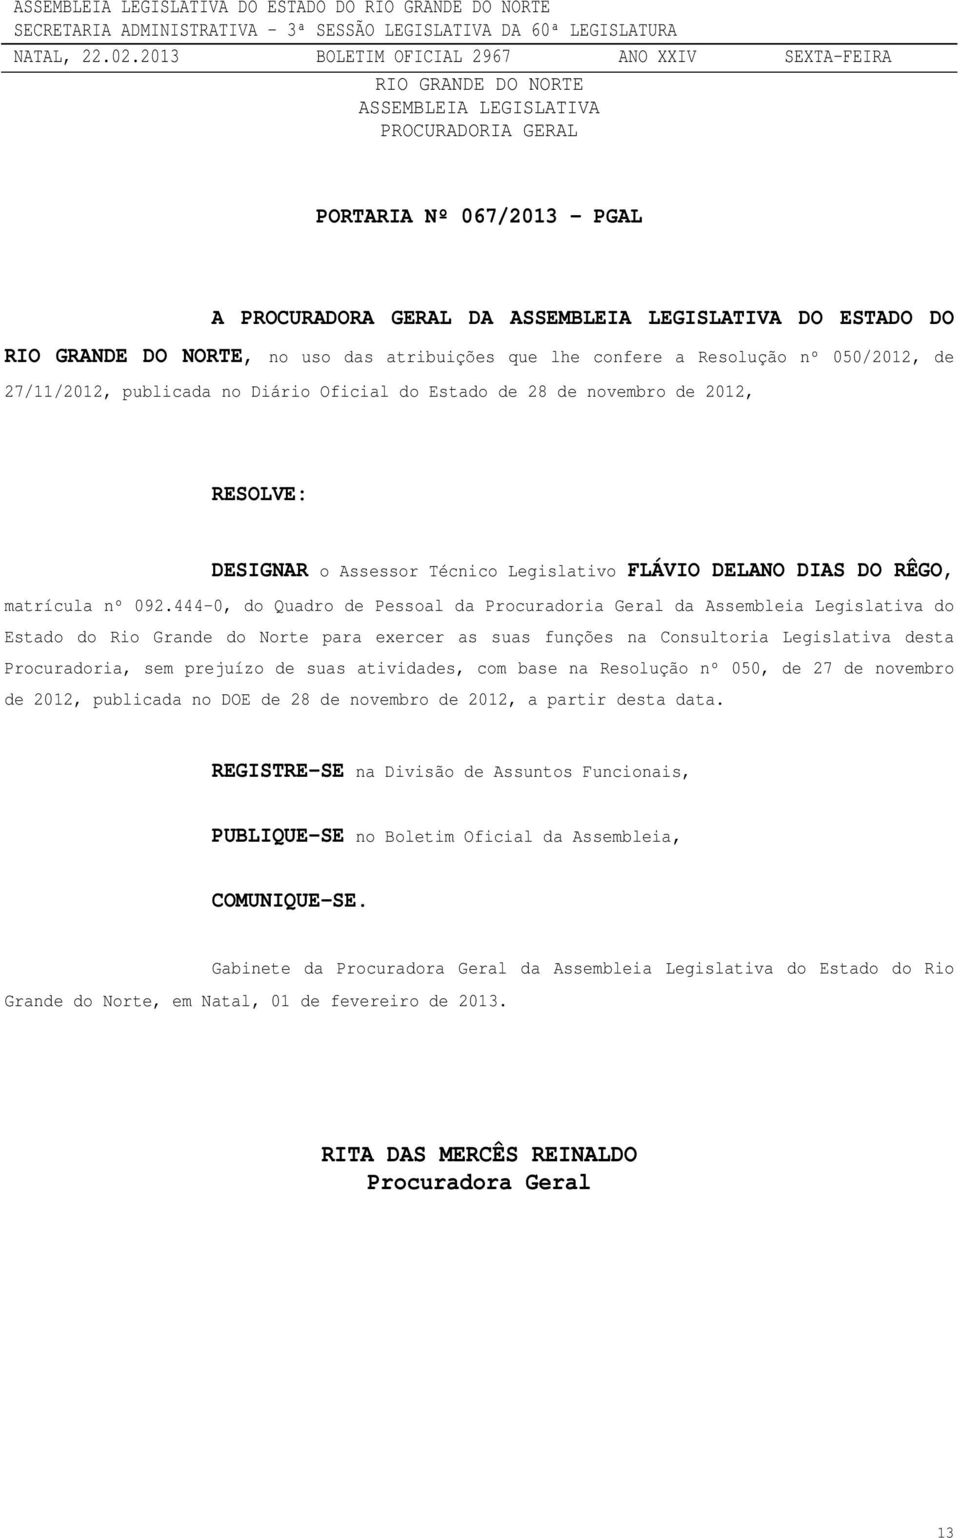 444-0, do Quadro de Pessoal da Procuradoria Geral da Assembleia Legislativa do Estado do Rio Grande do Norte para exercer as suas funções